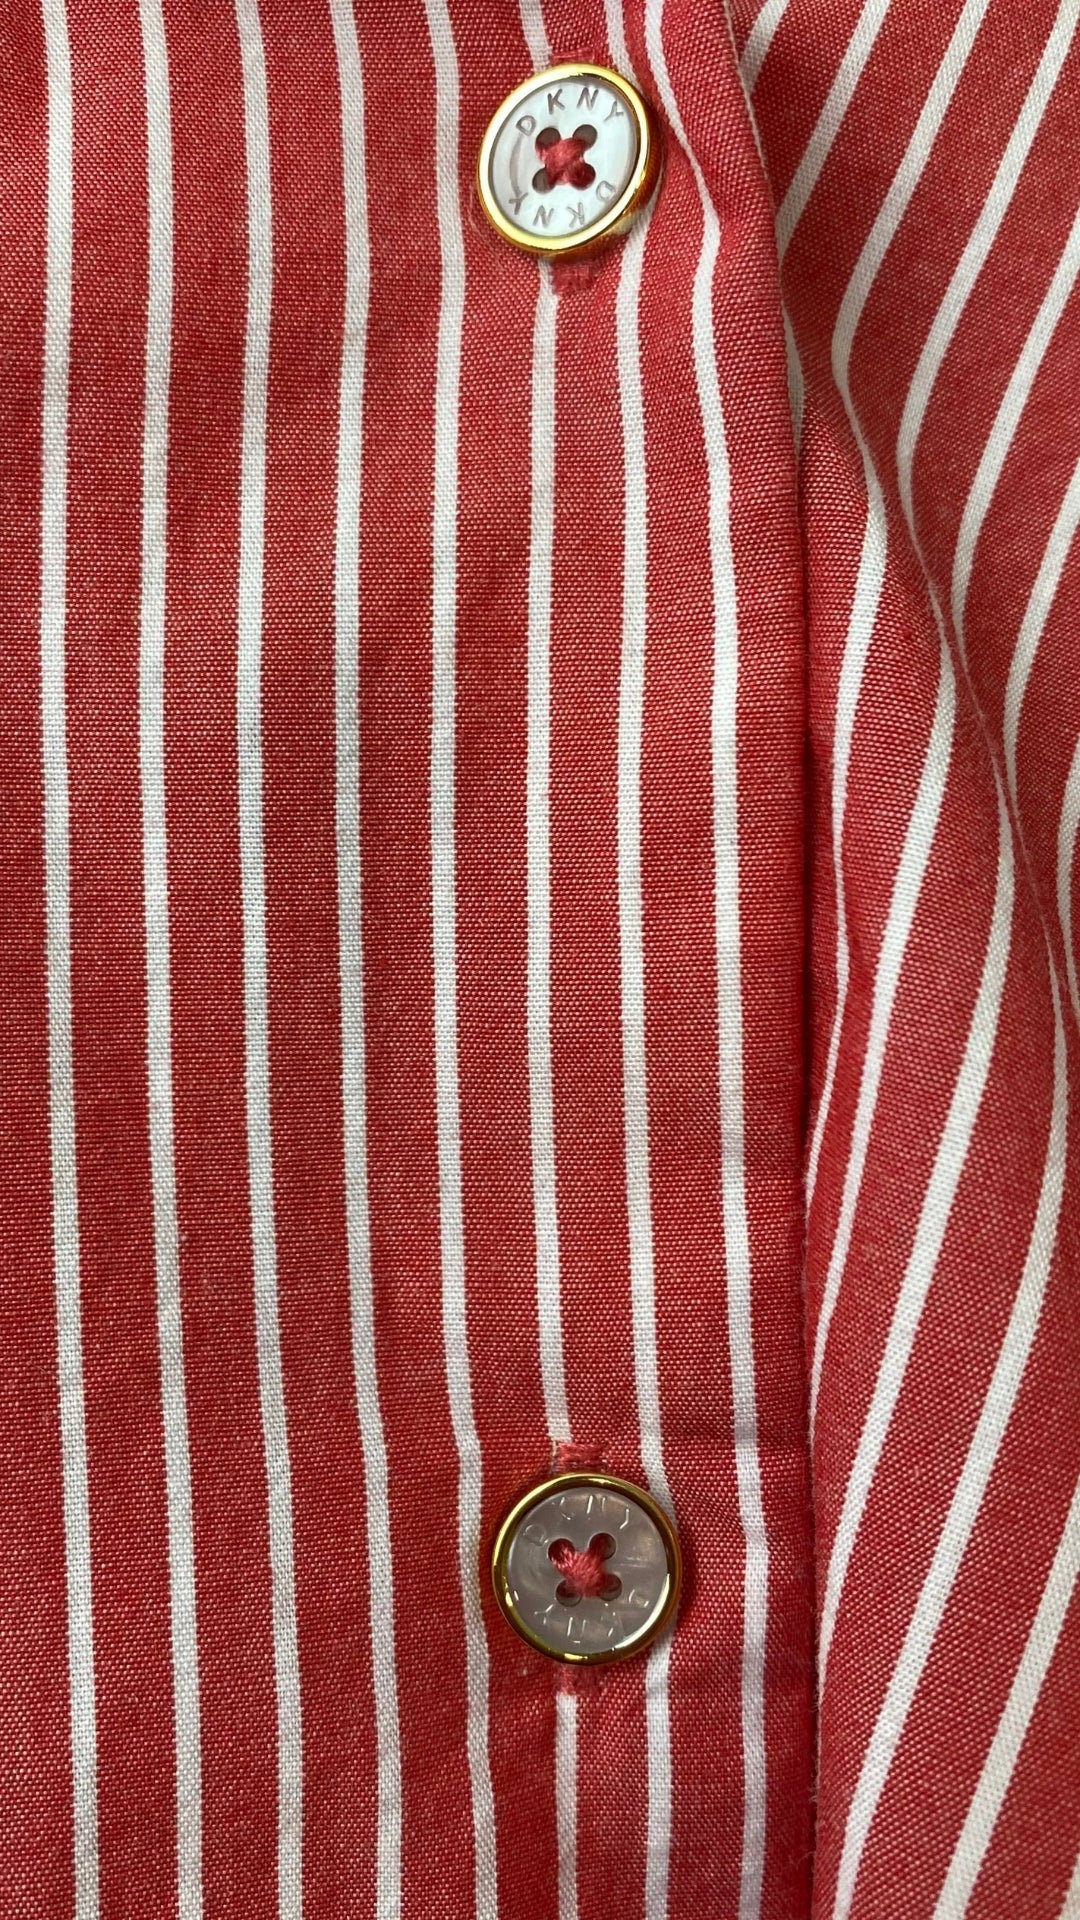 Chemisier rouge rose à rayures DKNY, taille medium. Vue de près des boutons et du tissu.